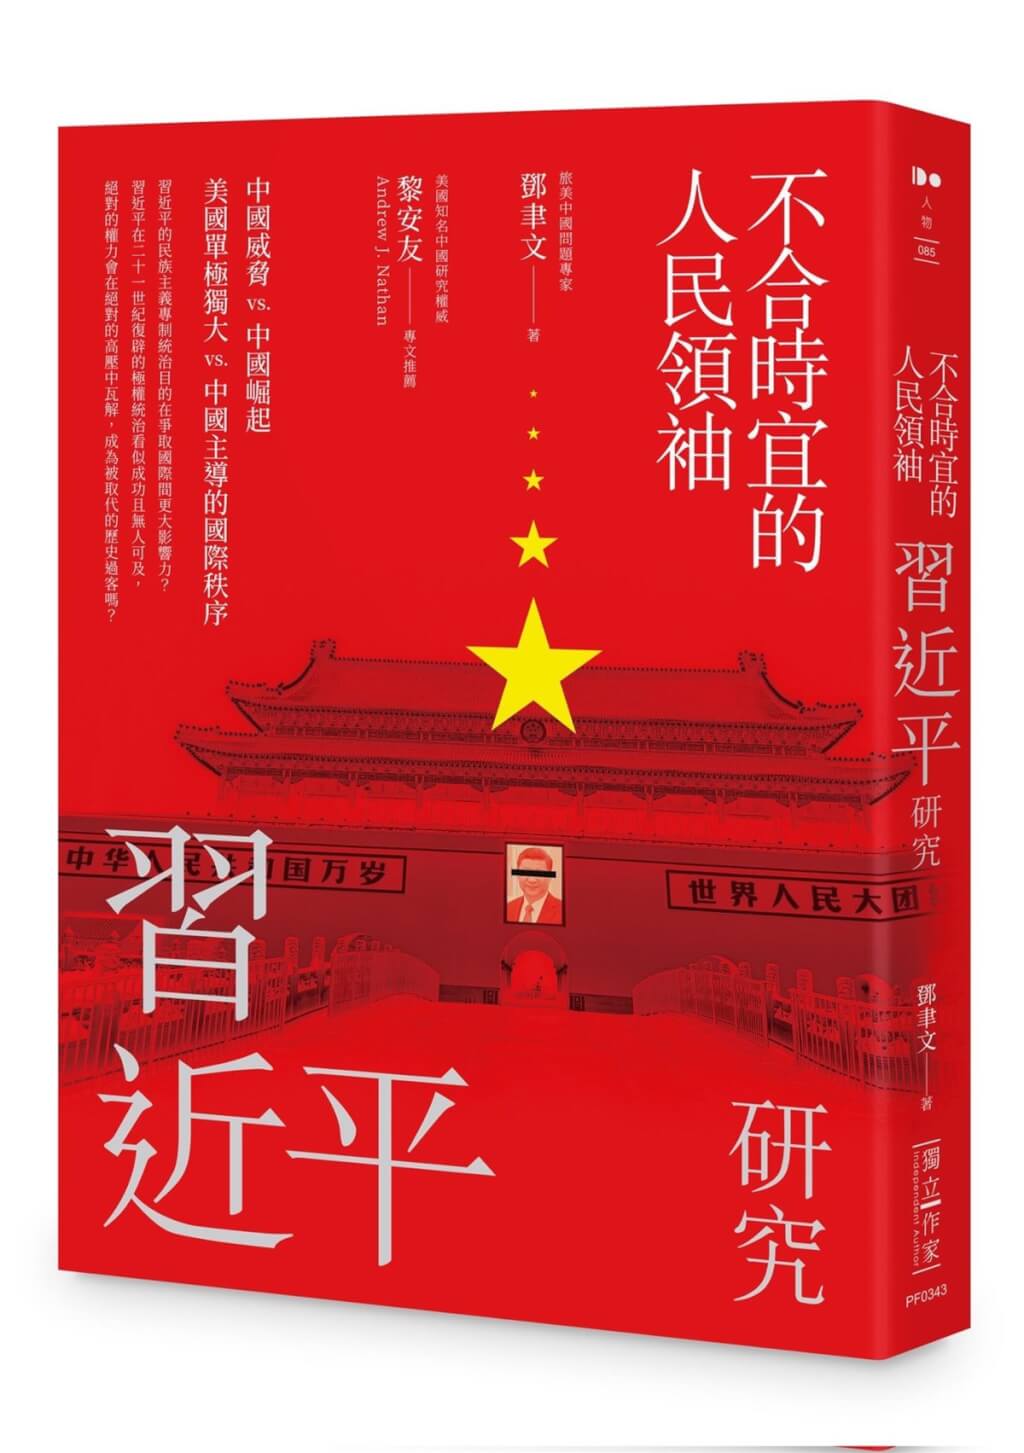 解析習近平鄧聿文出書「不合時宜的人民領袖」 | 兩岸| 中央社CNA